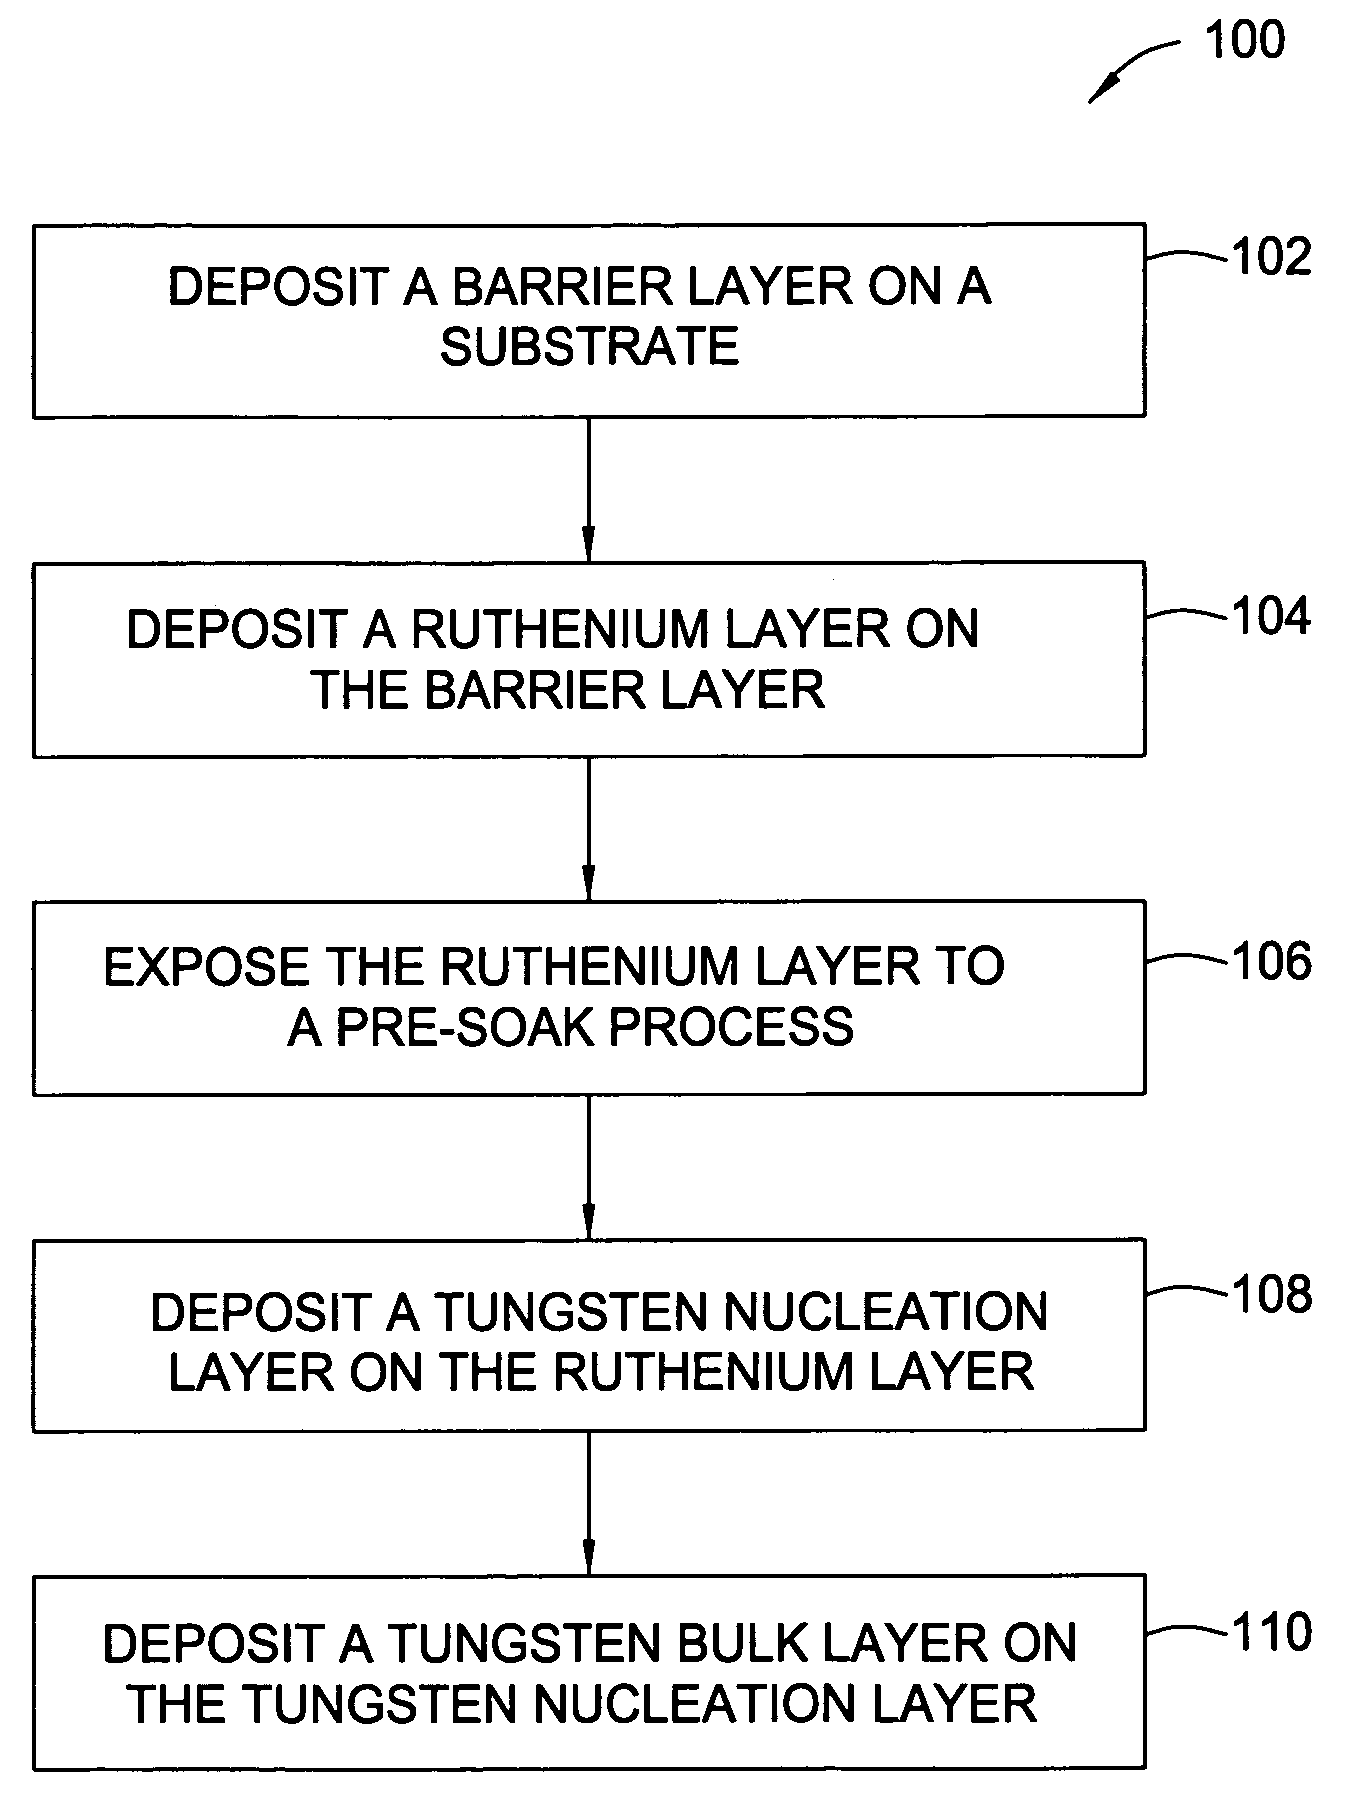 Ruthenium as an underlayer for tungsten film deposition